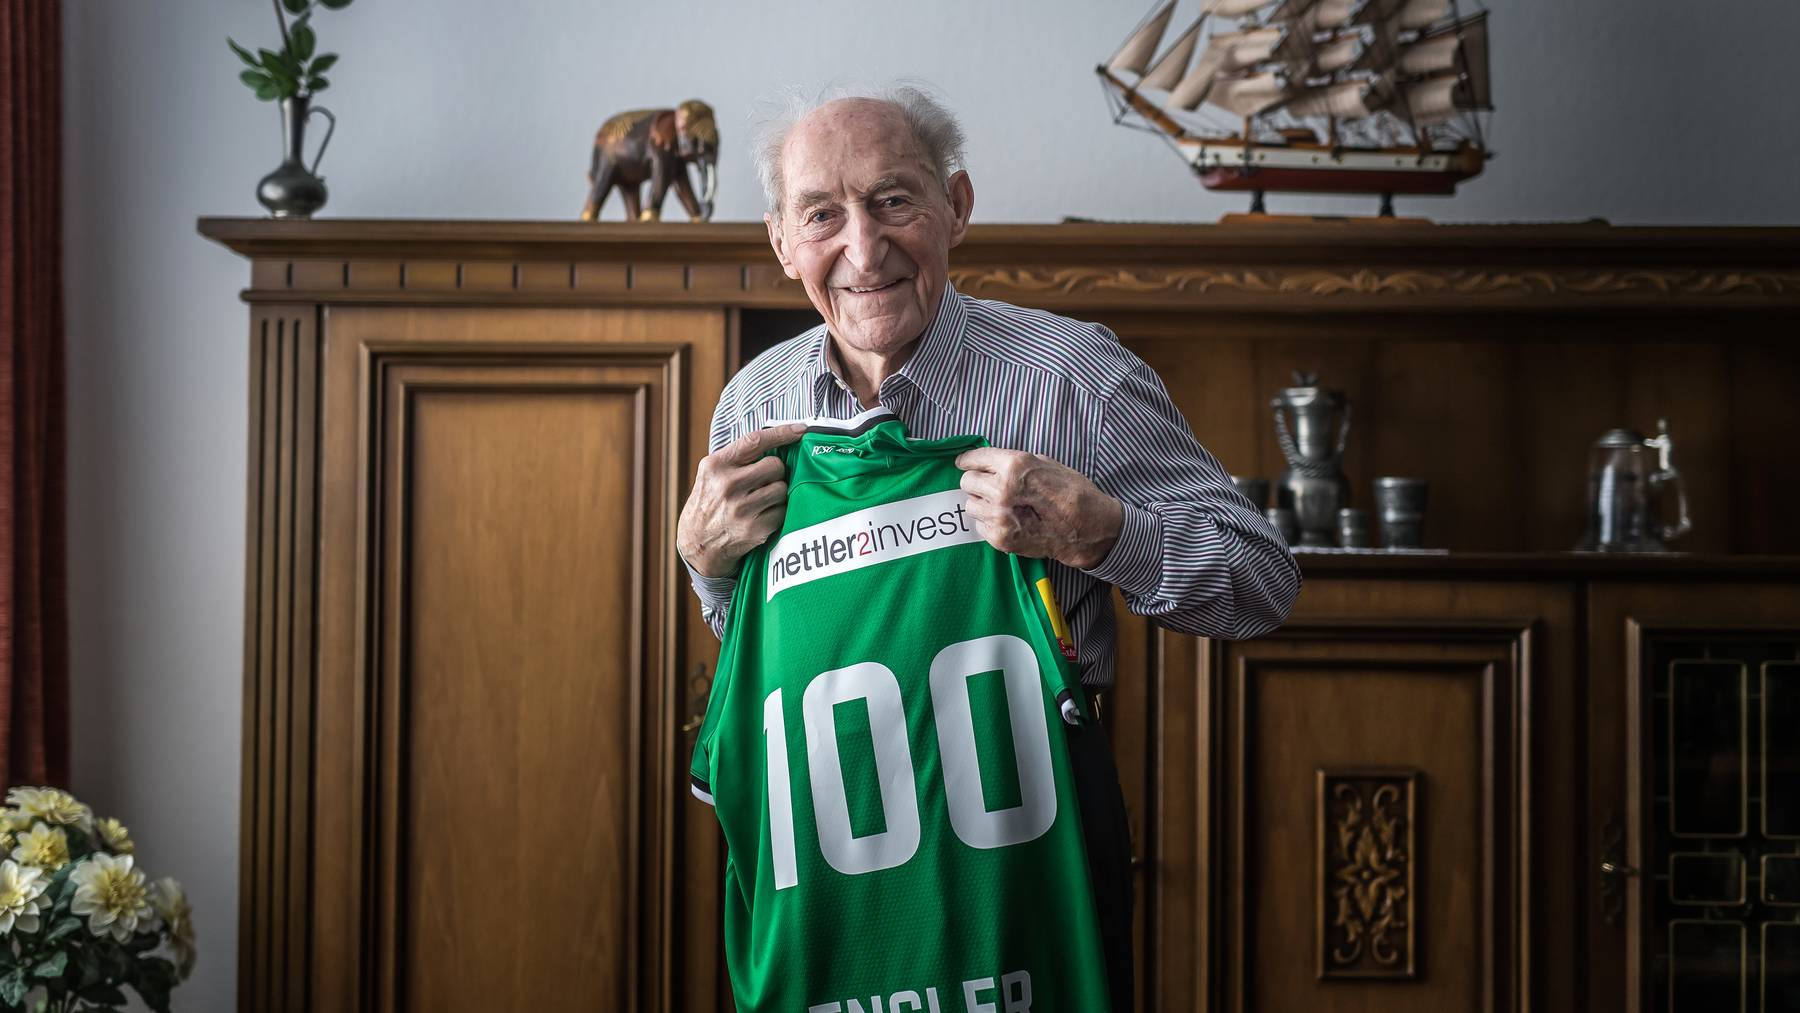 Zum 100. Geburtstag erhielt Röbi Engler vom FC St.Gallen ein Trikot mit der Nummer 100 und seinem Namen.